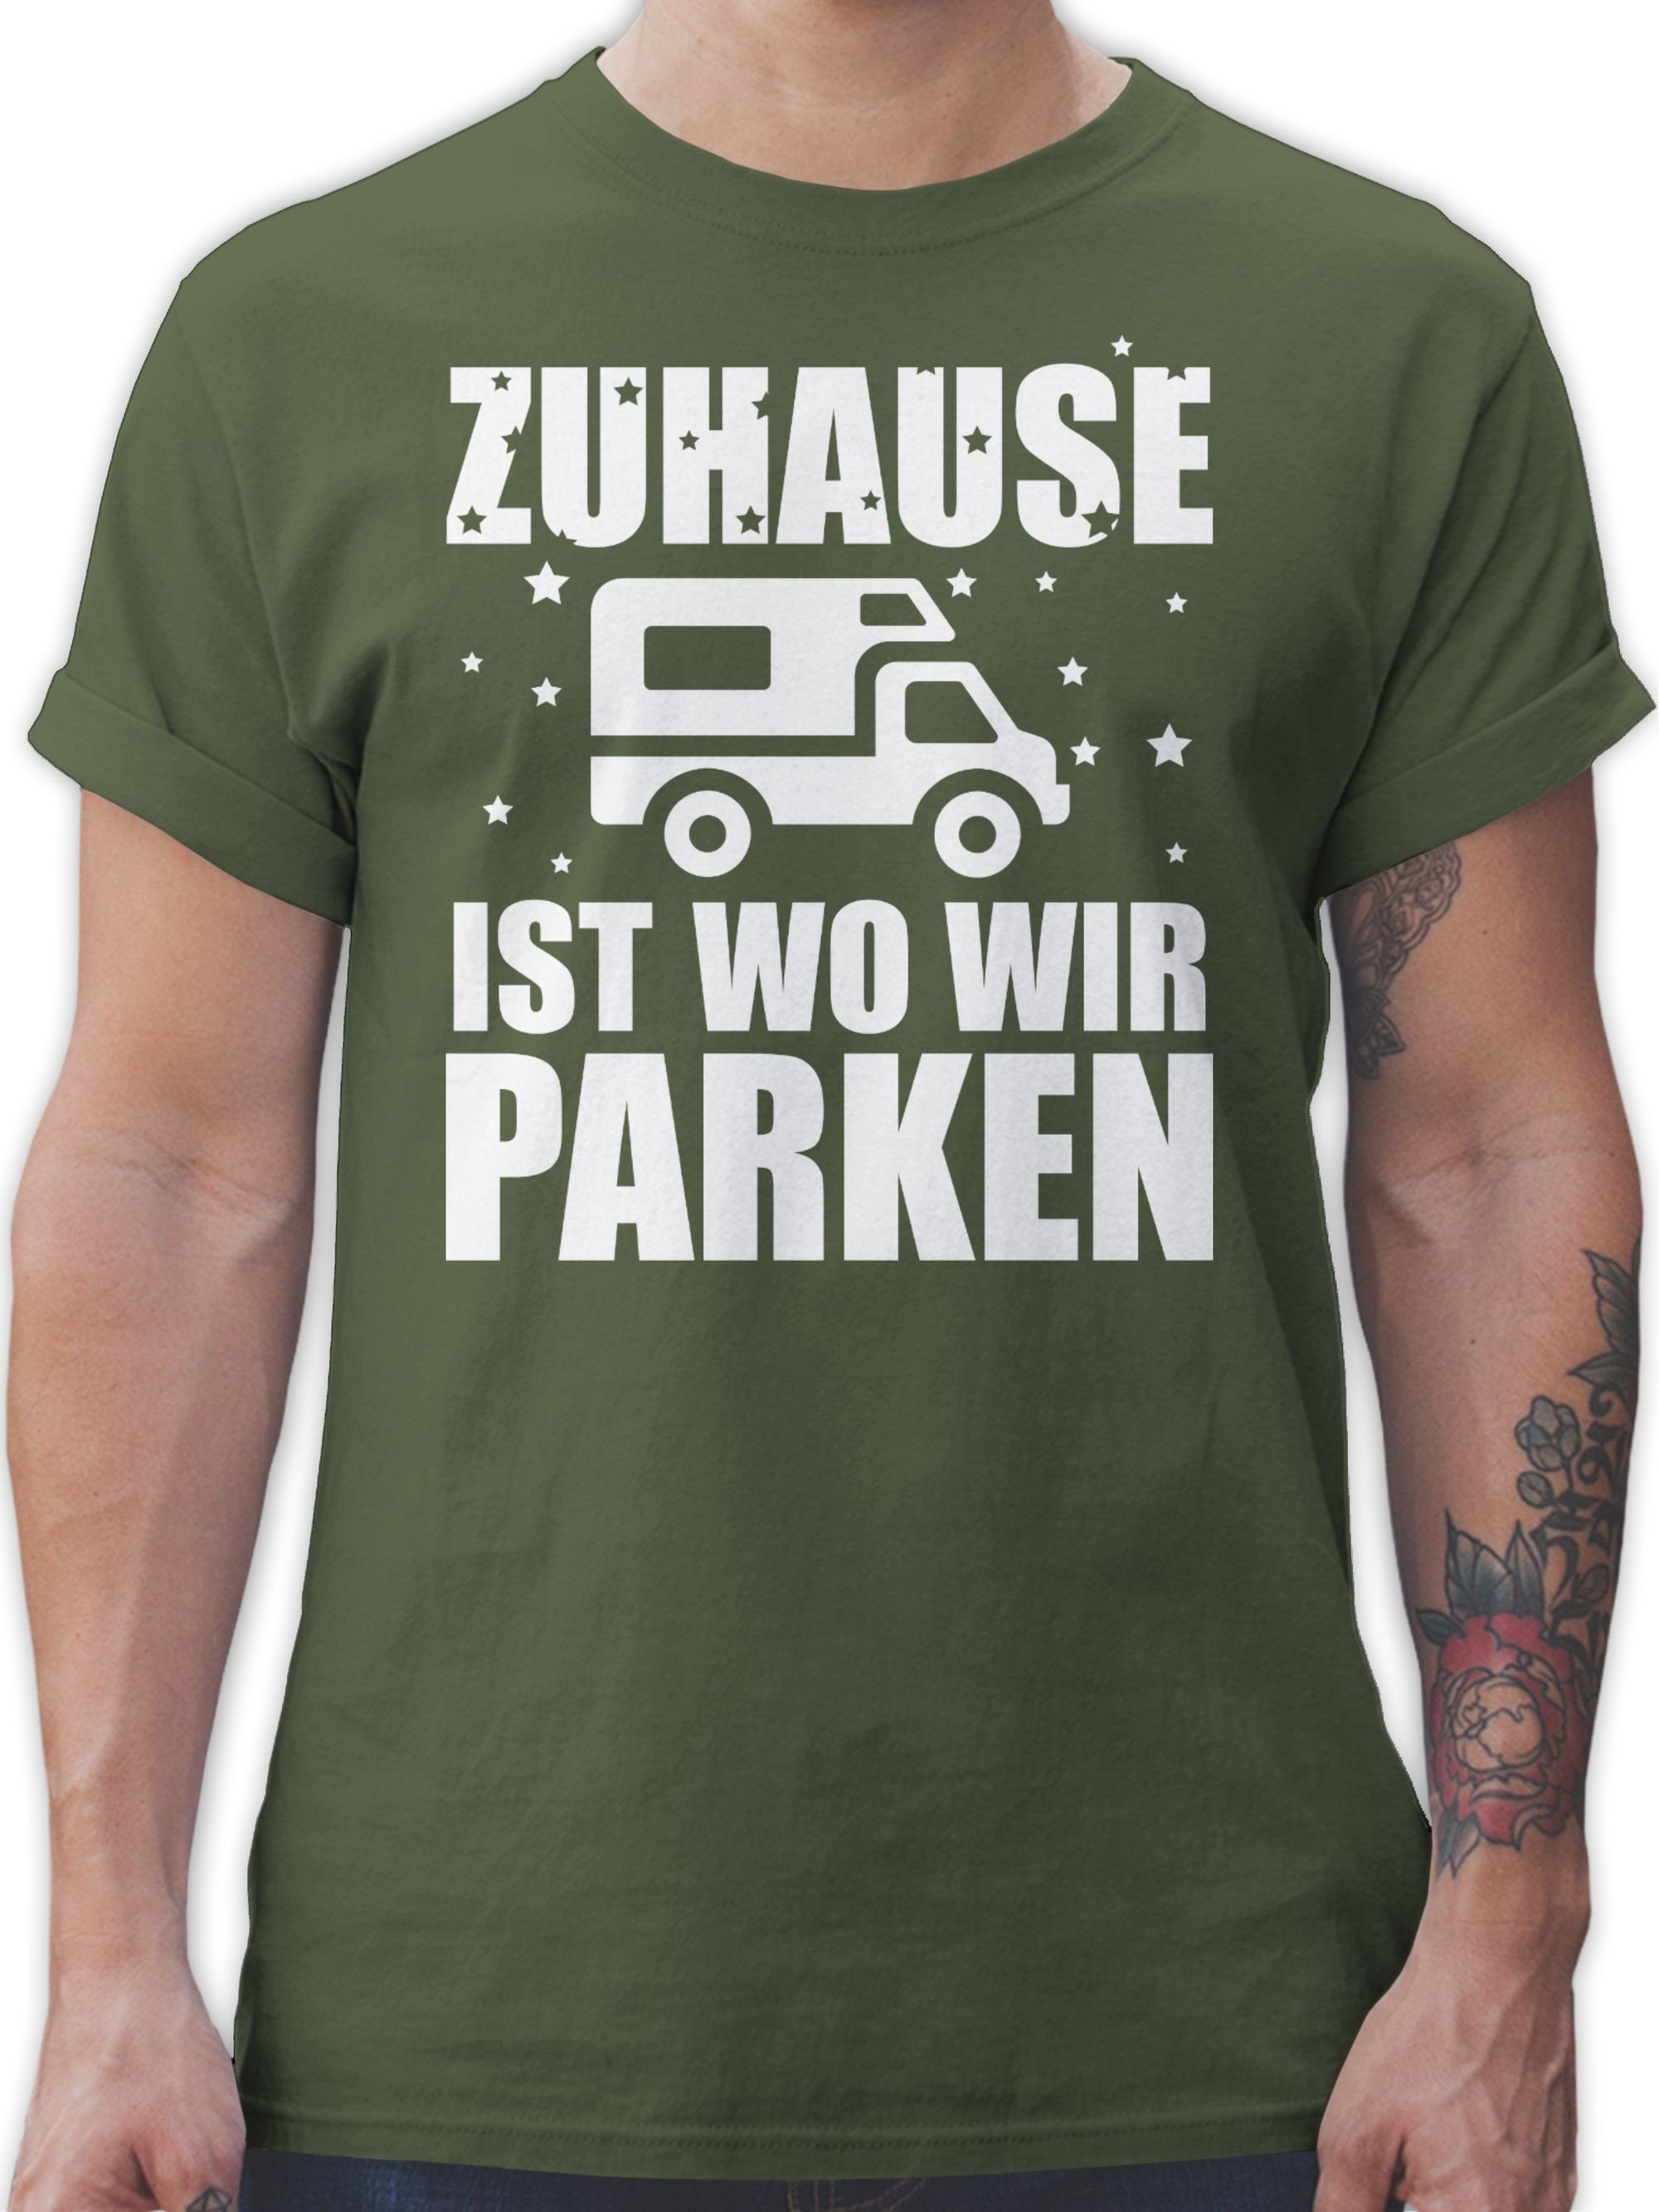 Shirtracer T-Shirt Grün wo Army weiß - Zuhause parken Hobby Outfit ist 2 wir